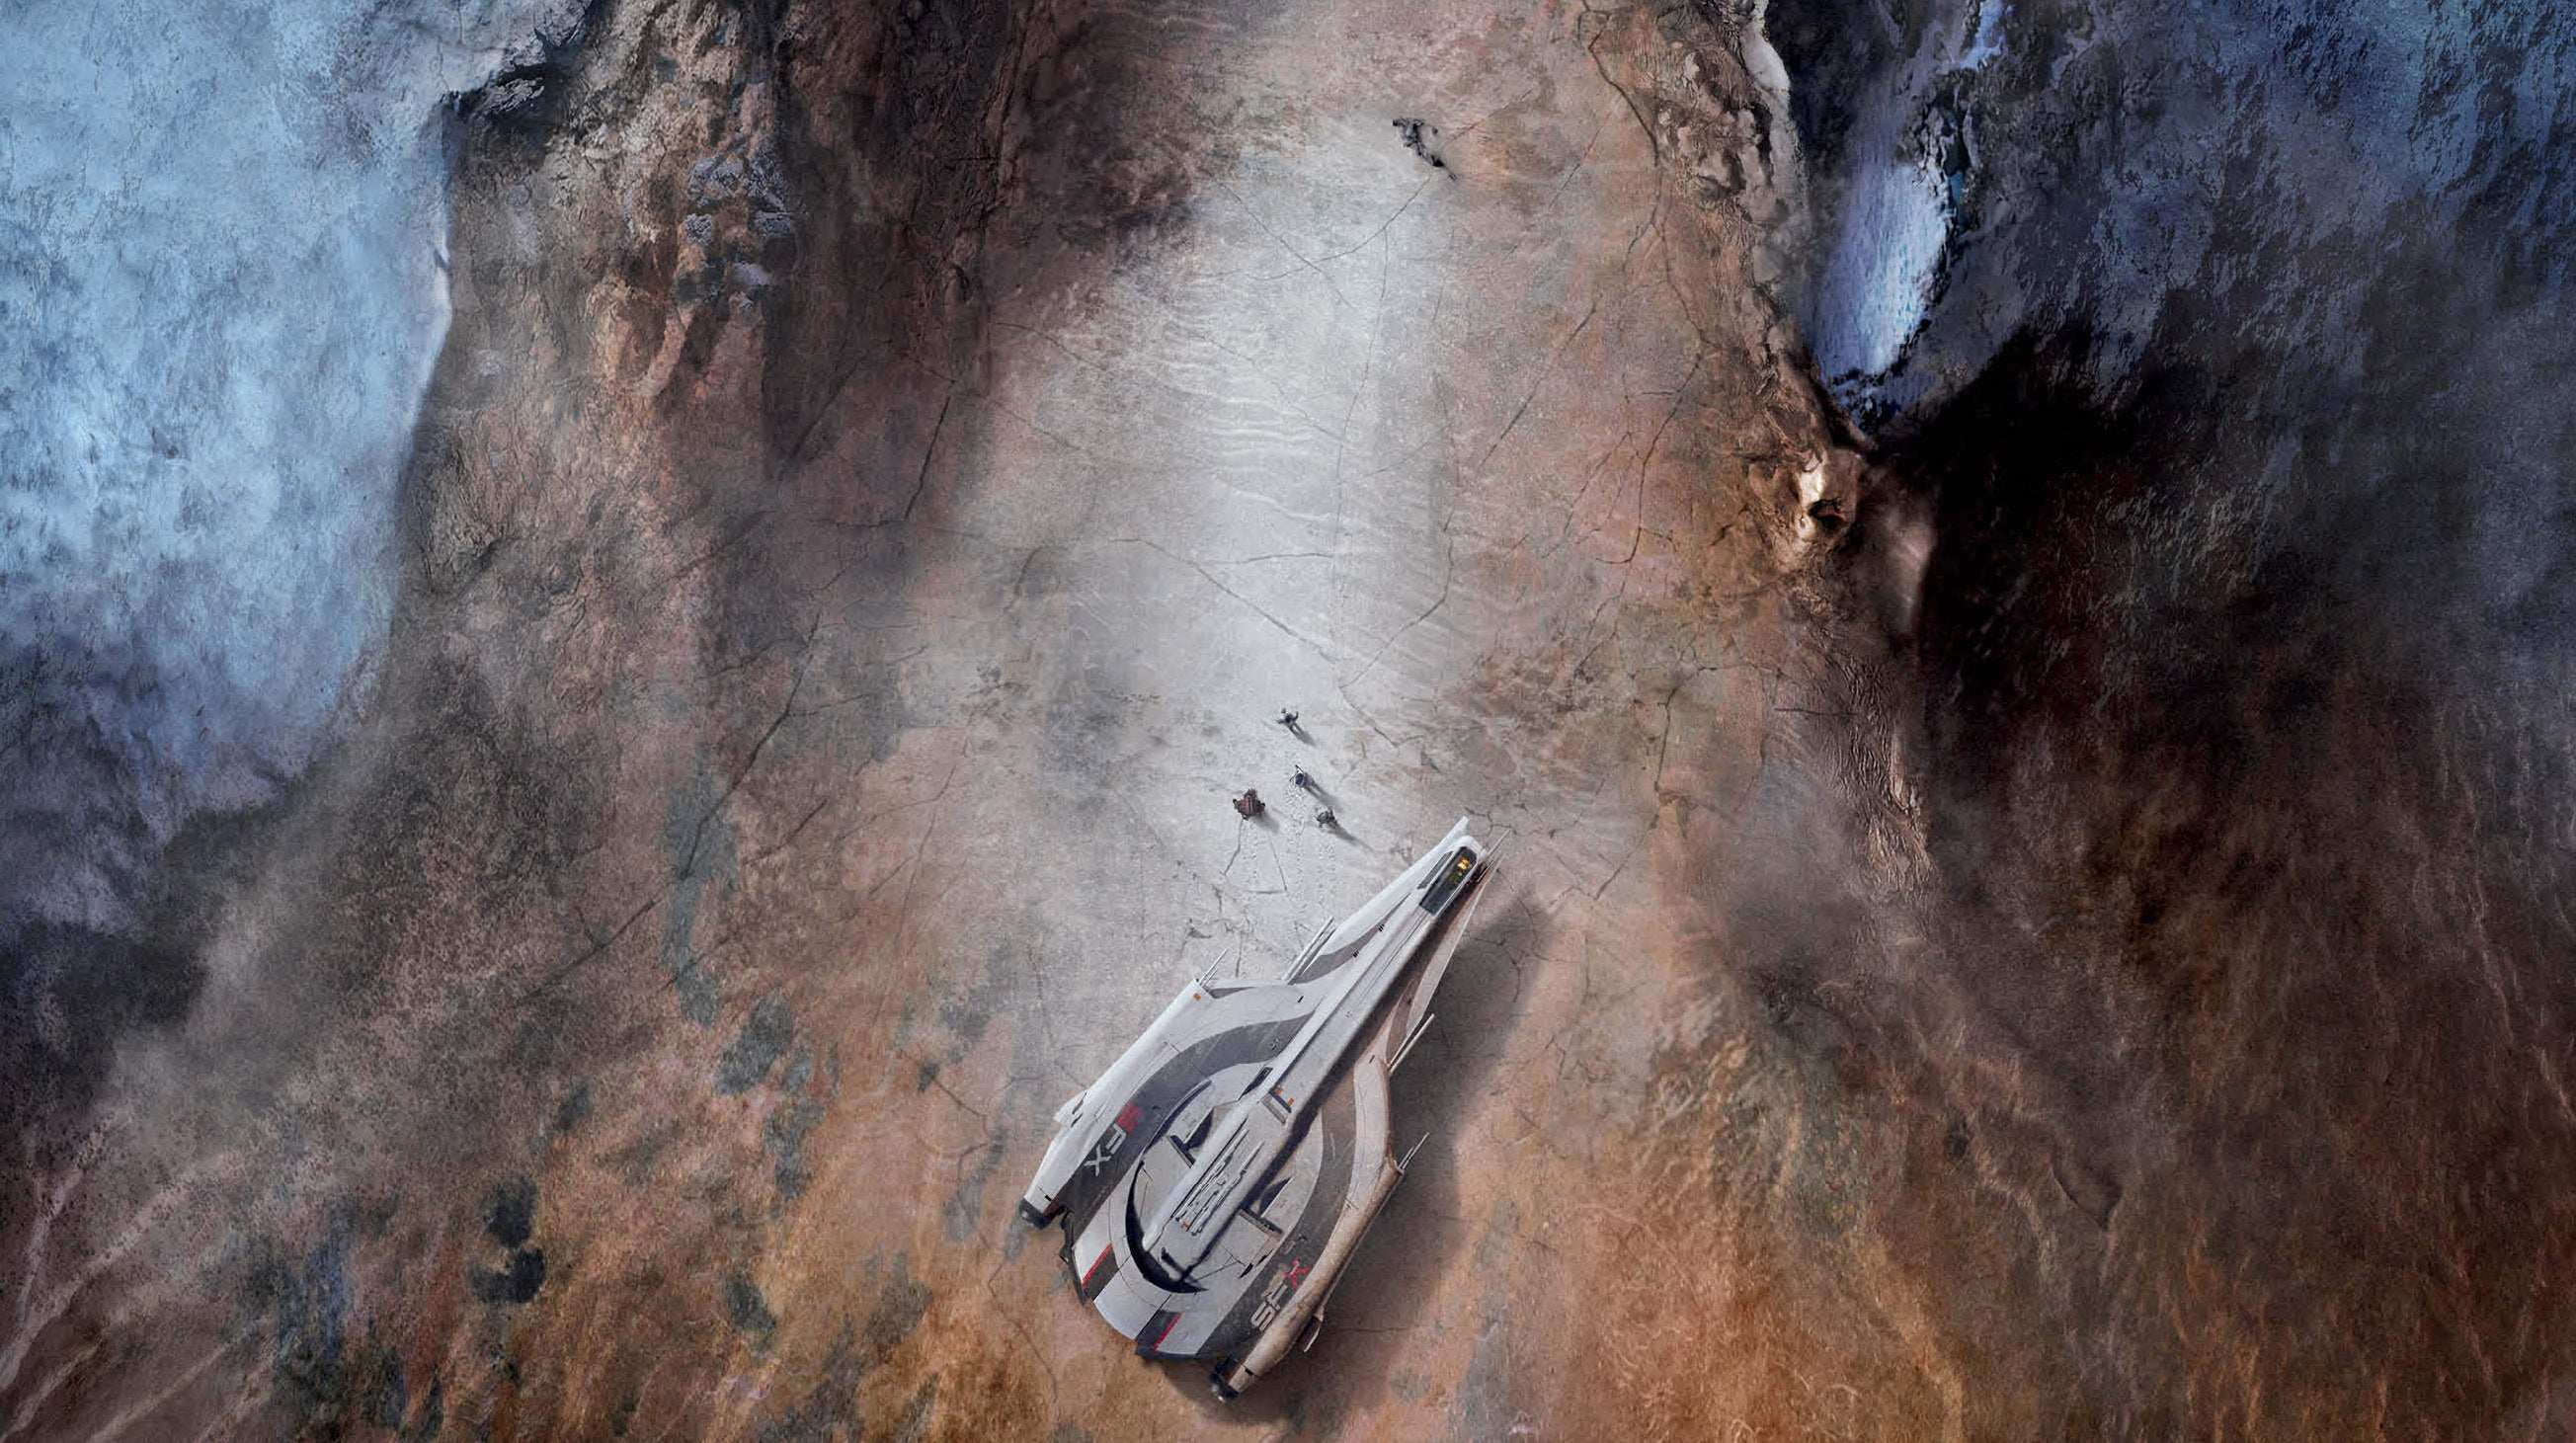 Immagine di Mass Effect in Unreal Engine? Il prossimo capitolo potrebbe sfruttare le potenzialità di Unreal Engine 5